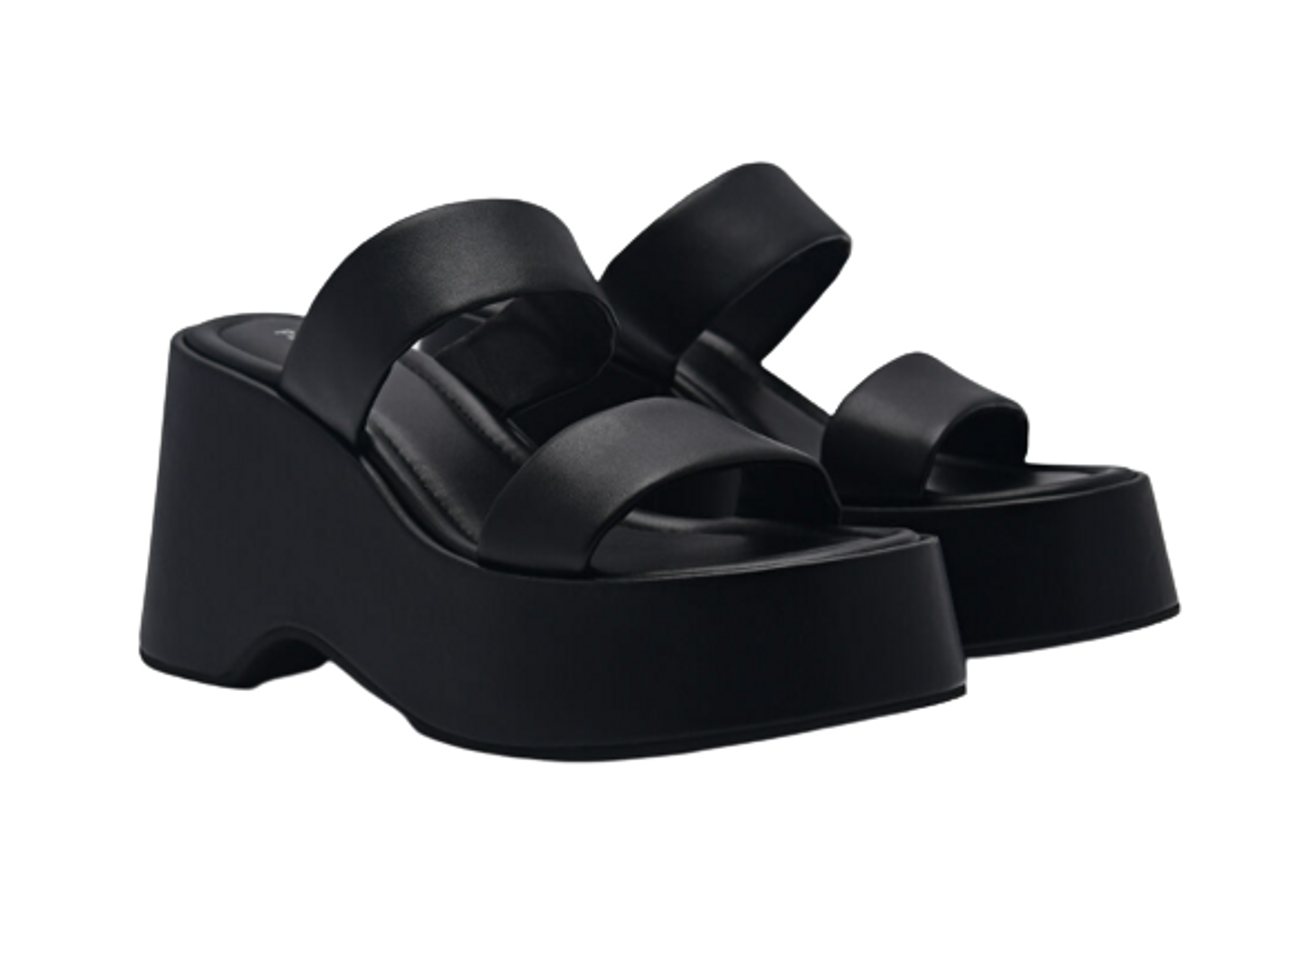 Sandals đế xuồng Pedro Bianca PW1-46680003 Black màu đen, 35